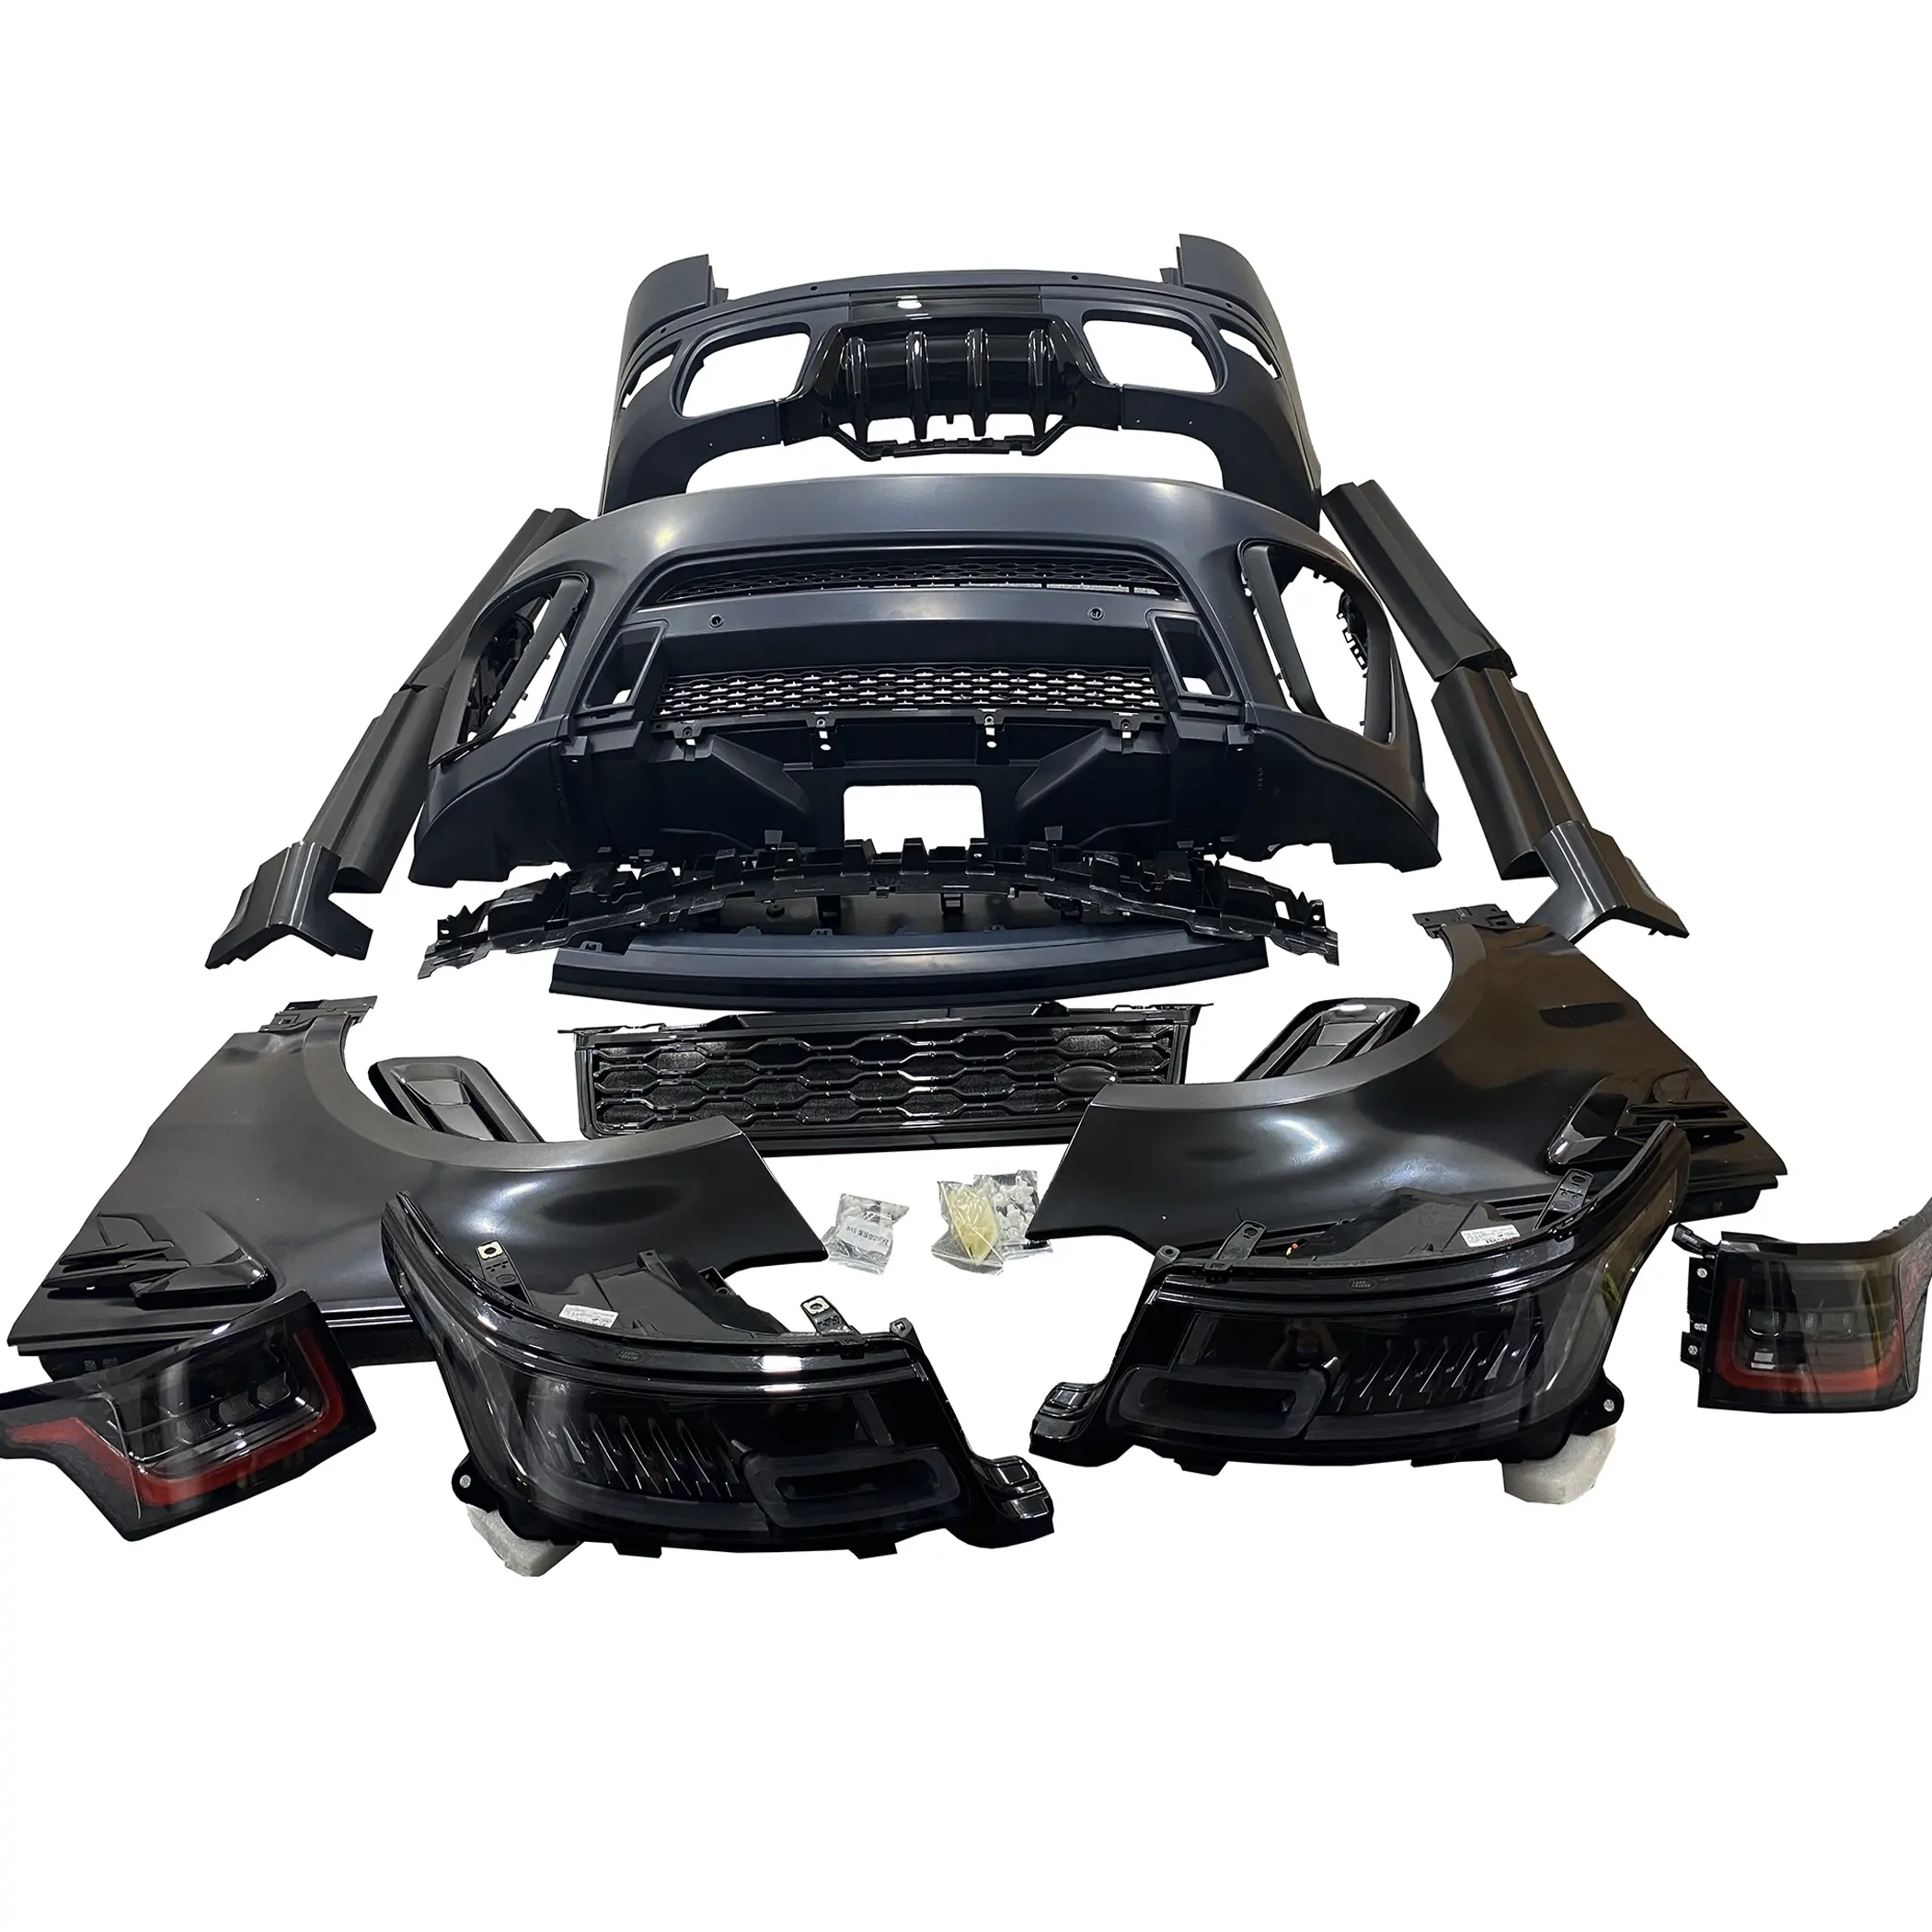 Z-ART sport tuning body kit for sport SVR body kit for LAND ROVER Range rover sport facelift kit 2014-2017